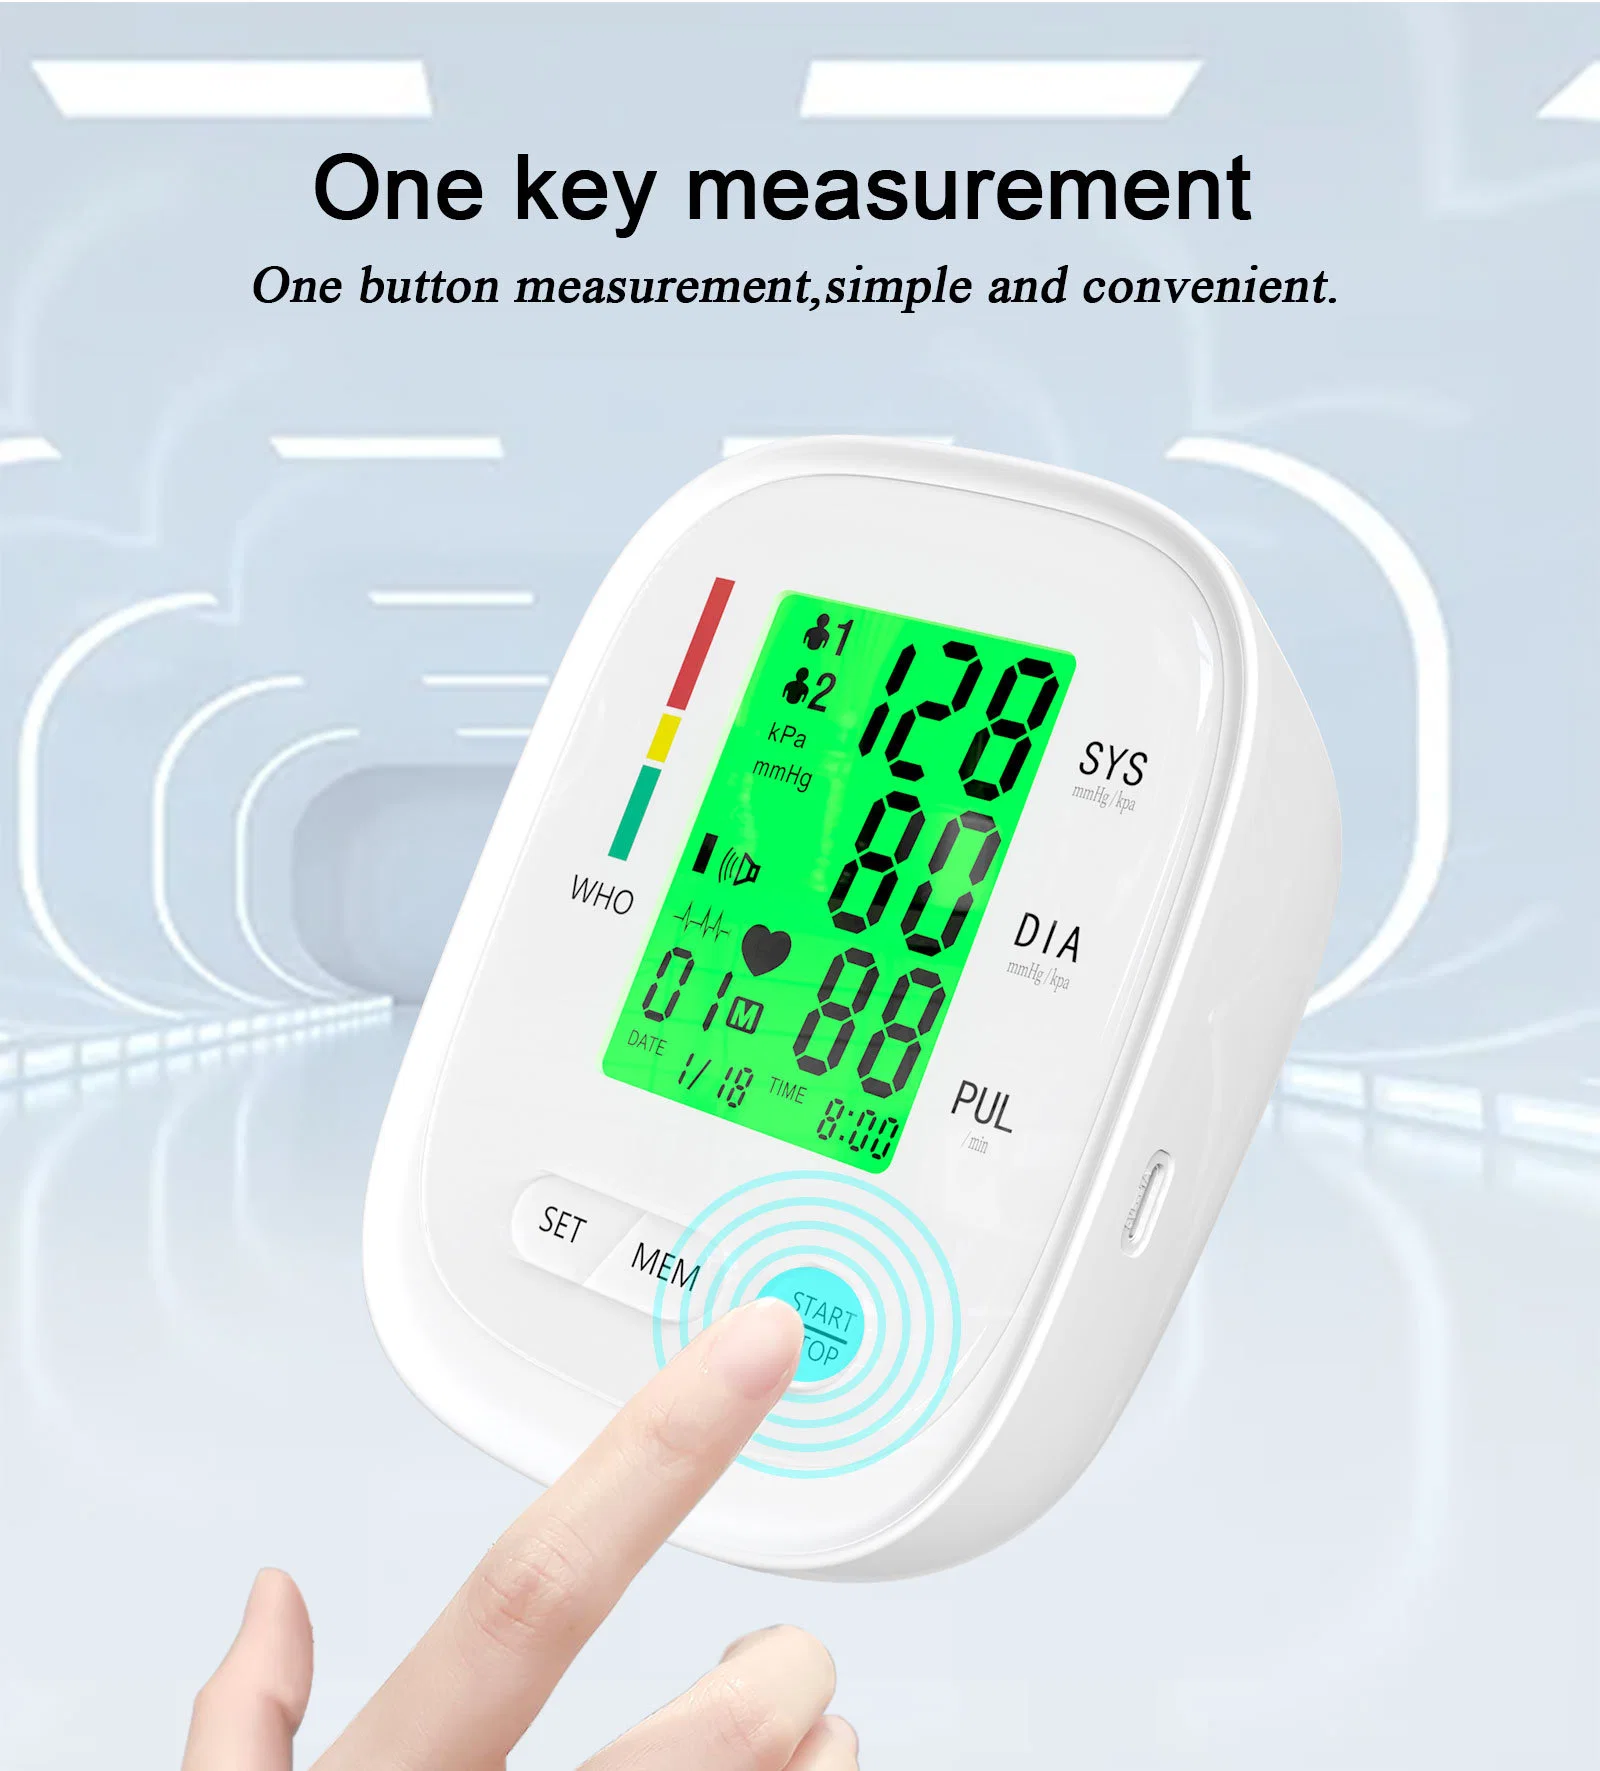 ضغط مراقبة ضغط الدم جهاز ضغط الدم اللوزميomanometer Tendsiometer BP Machine Digital Upper (العلوي الرقمي) مراقبة ضغط الدم للذراع